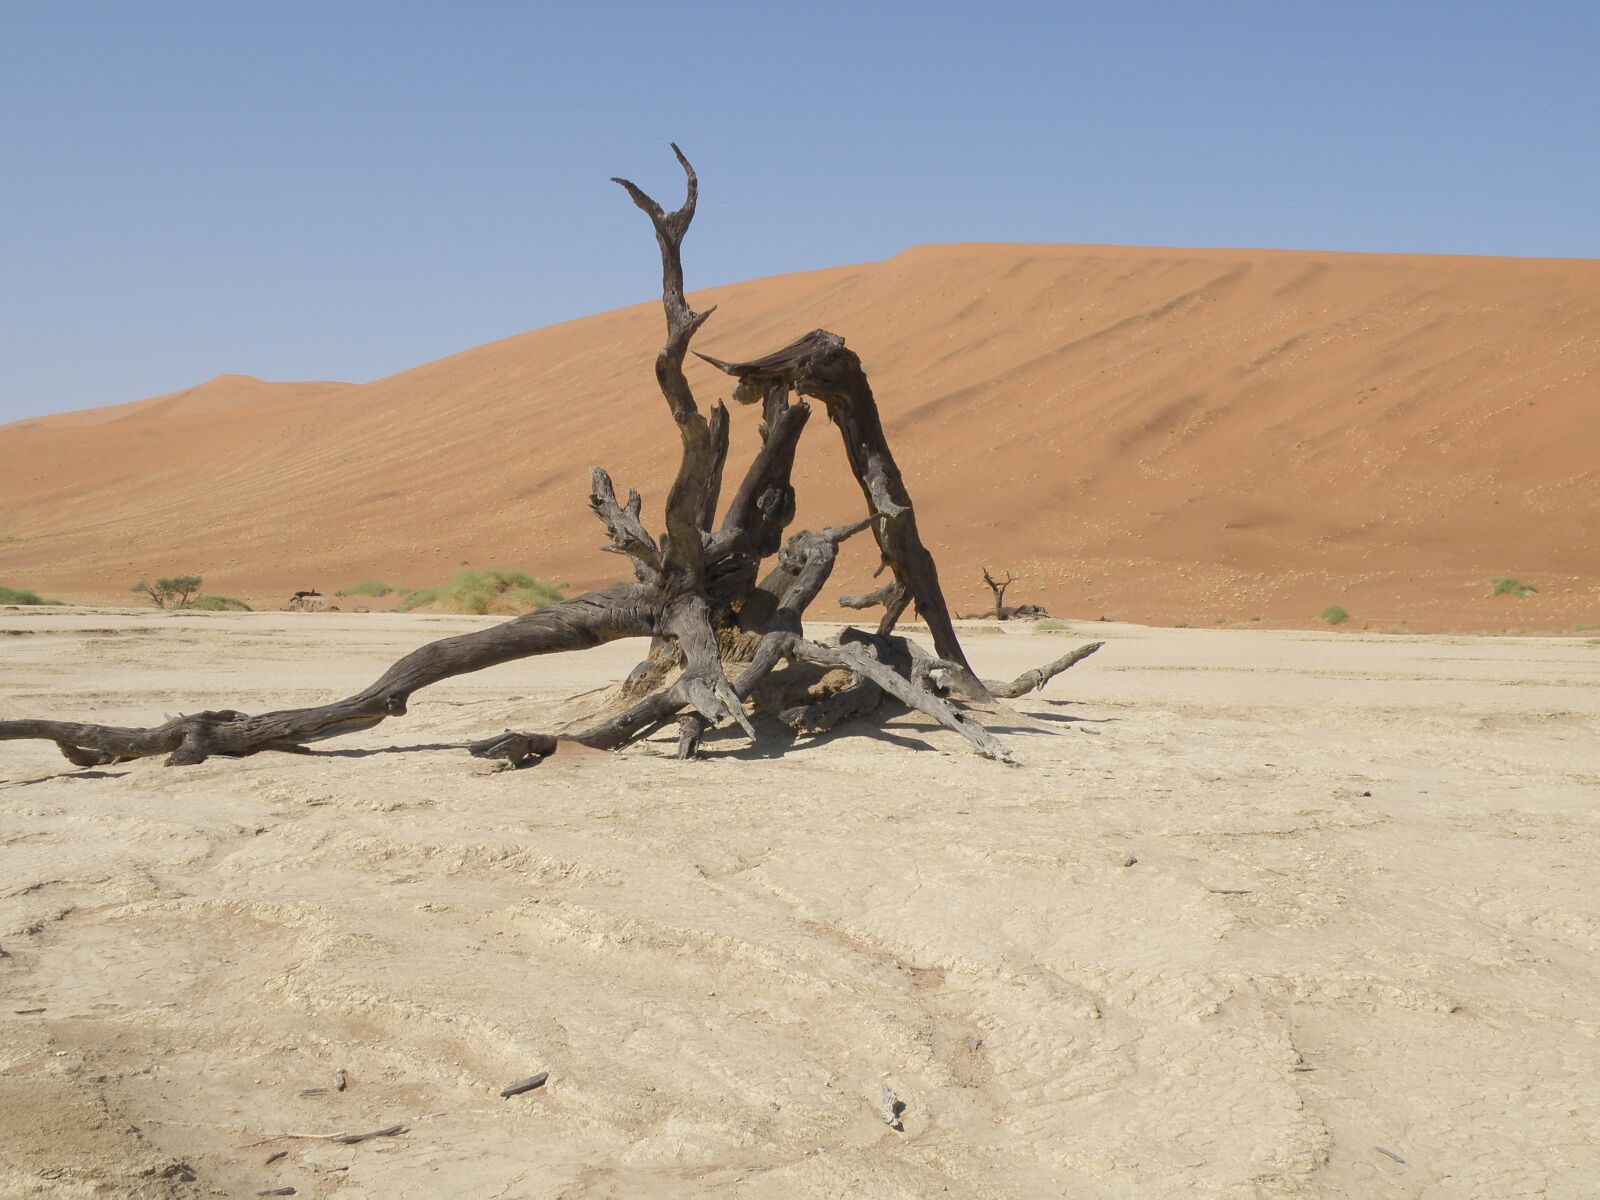 Olympus SP570UZ sample photo. Dunes, namibia, desert photography